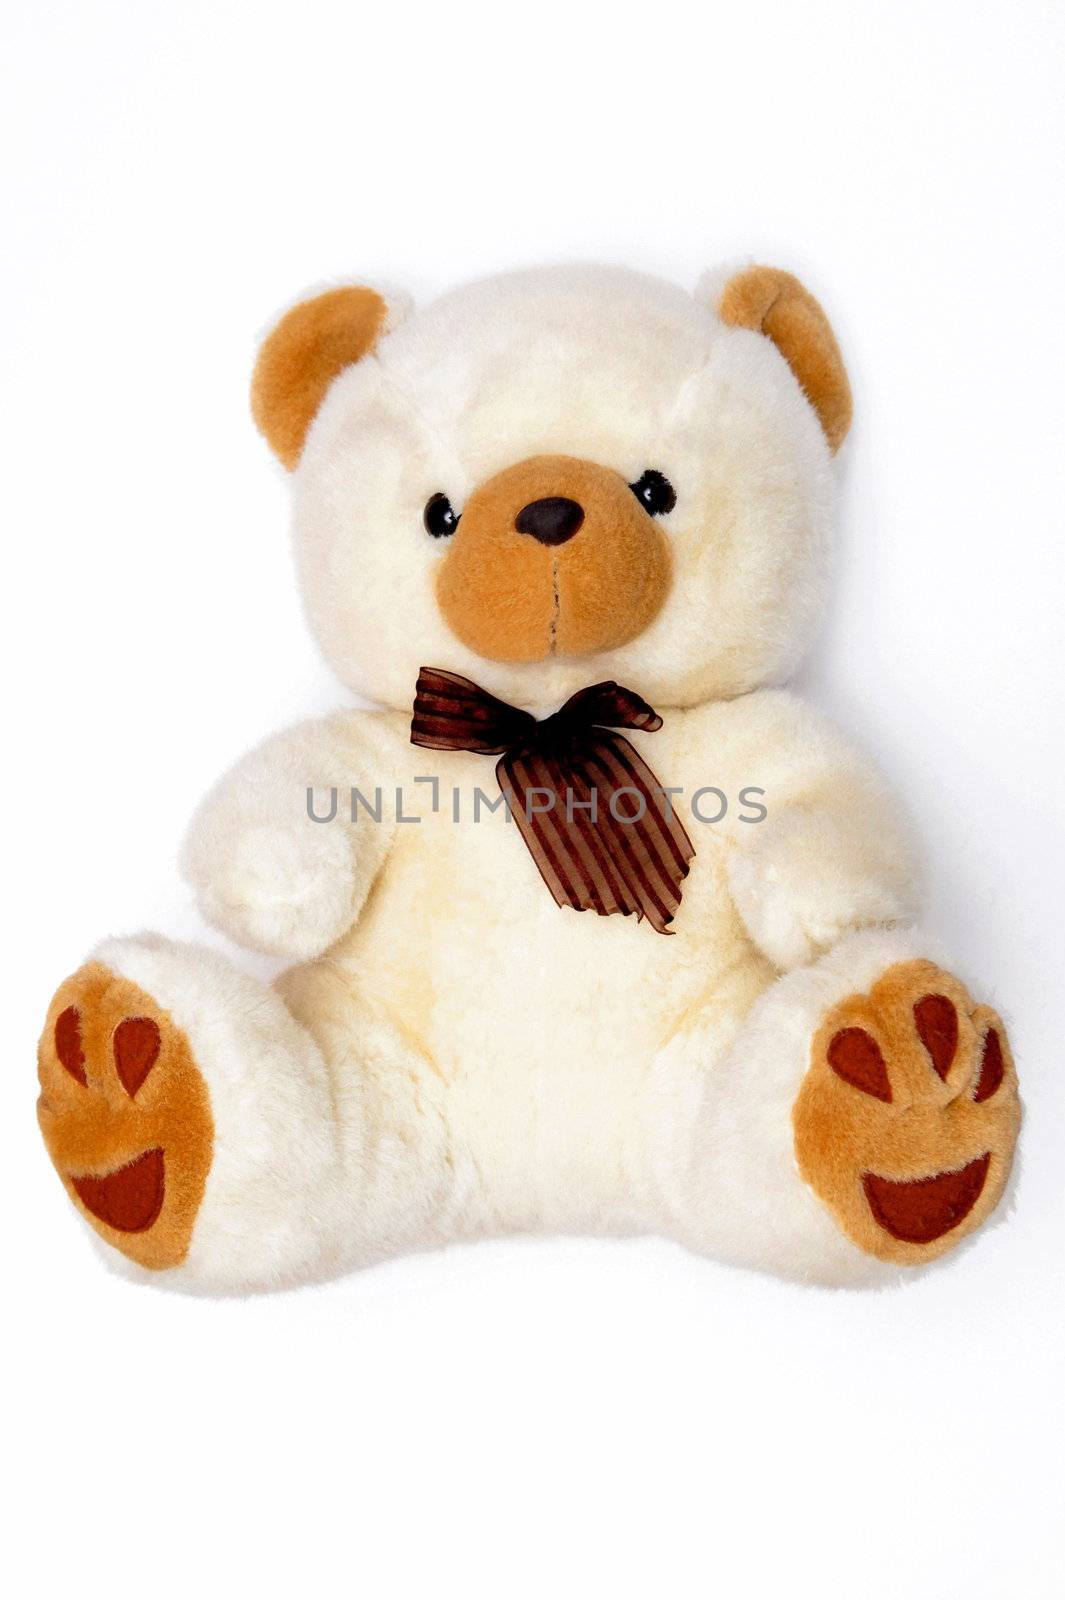 Teddy bear by Yaurinko